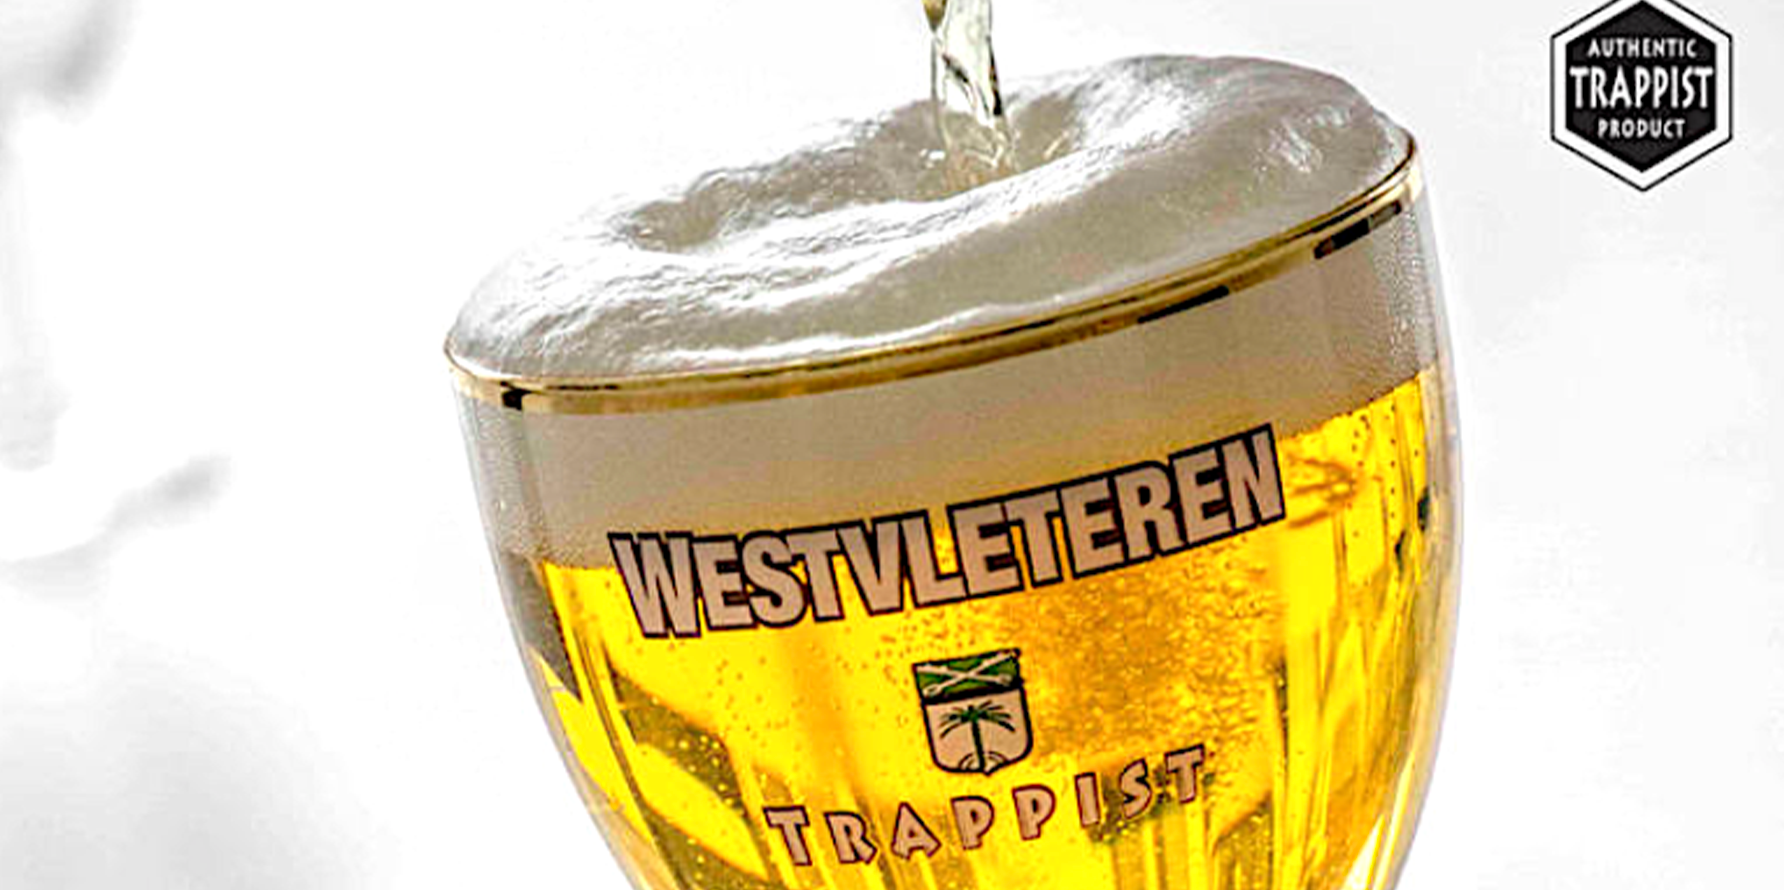 Birra Trapppista: le birre Westvletener vengono prodotte con ingredienti naturali e non sono nè filtrate nè pastorizzate.